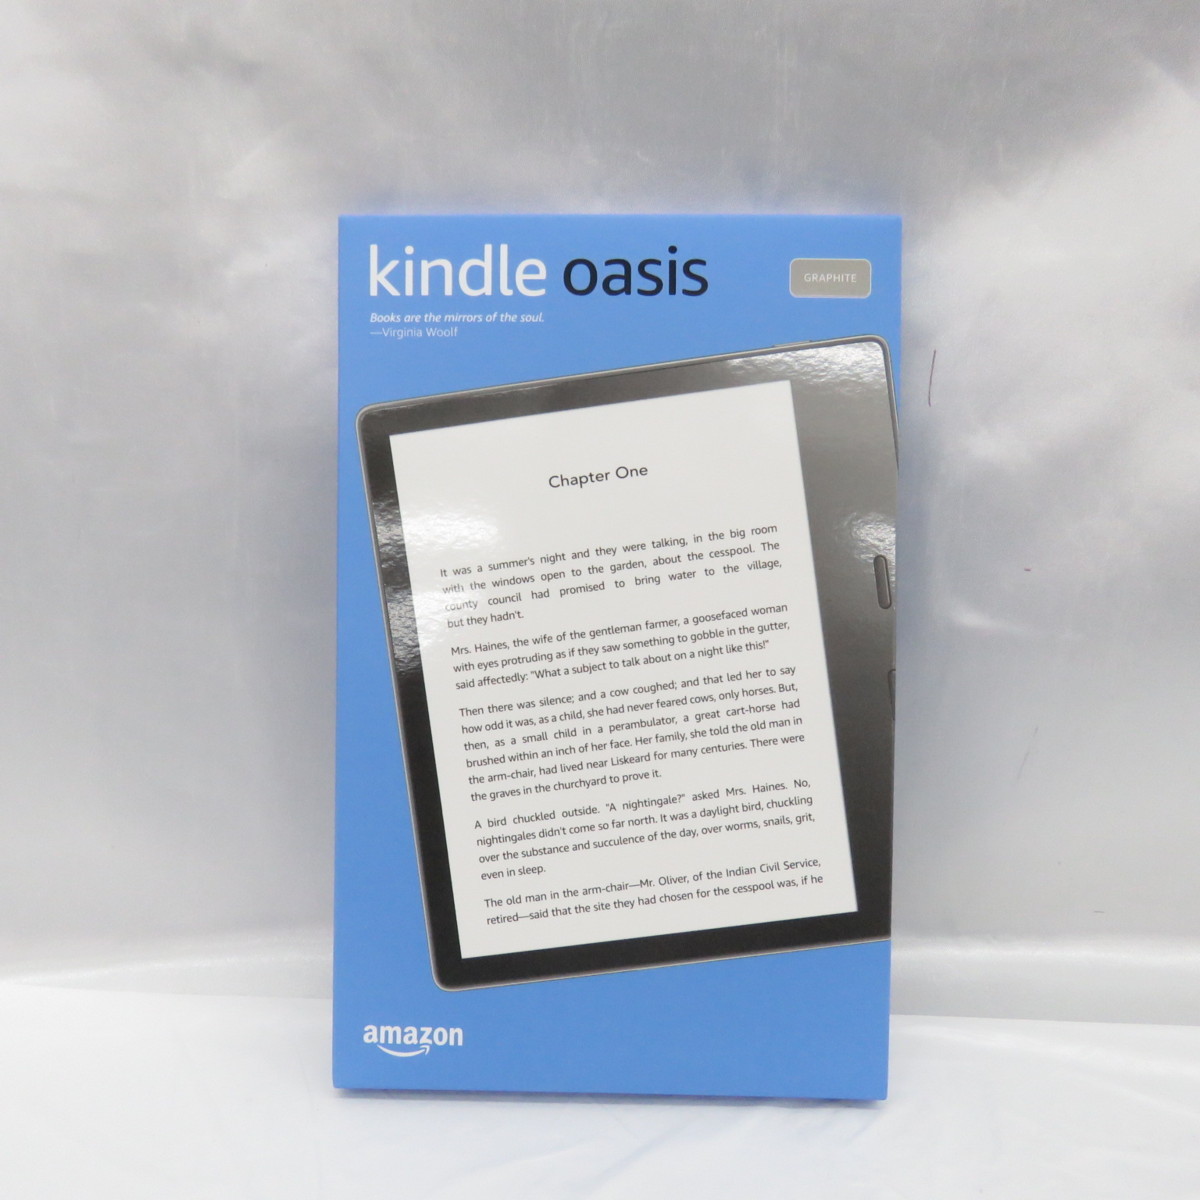 [ нераспечатанный / не использовался товар ]Amazon Amazon электронная книга Kindle Oasis gold доллар или sisWi-Fi модель 32GB graphite 11008387